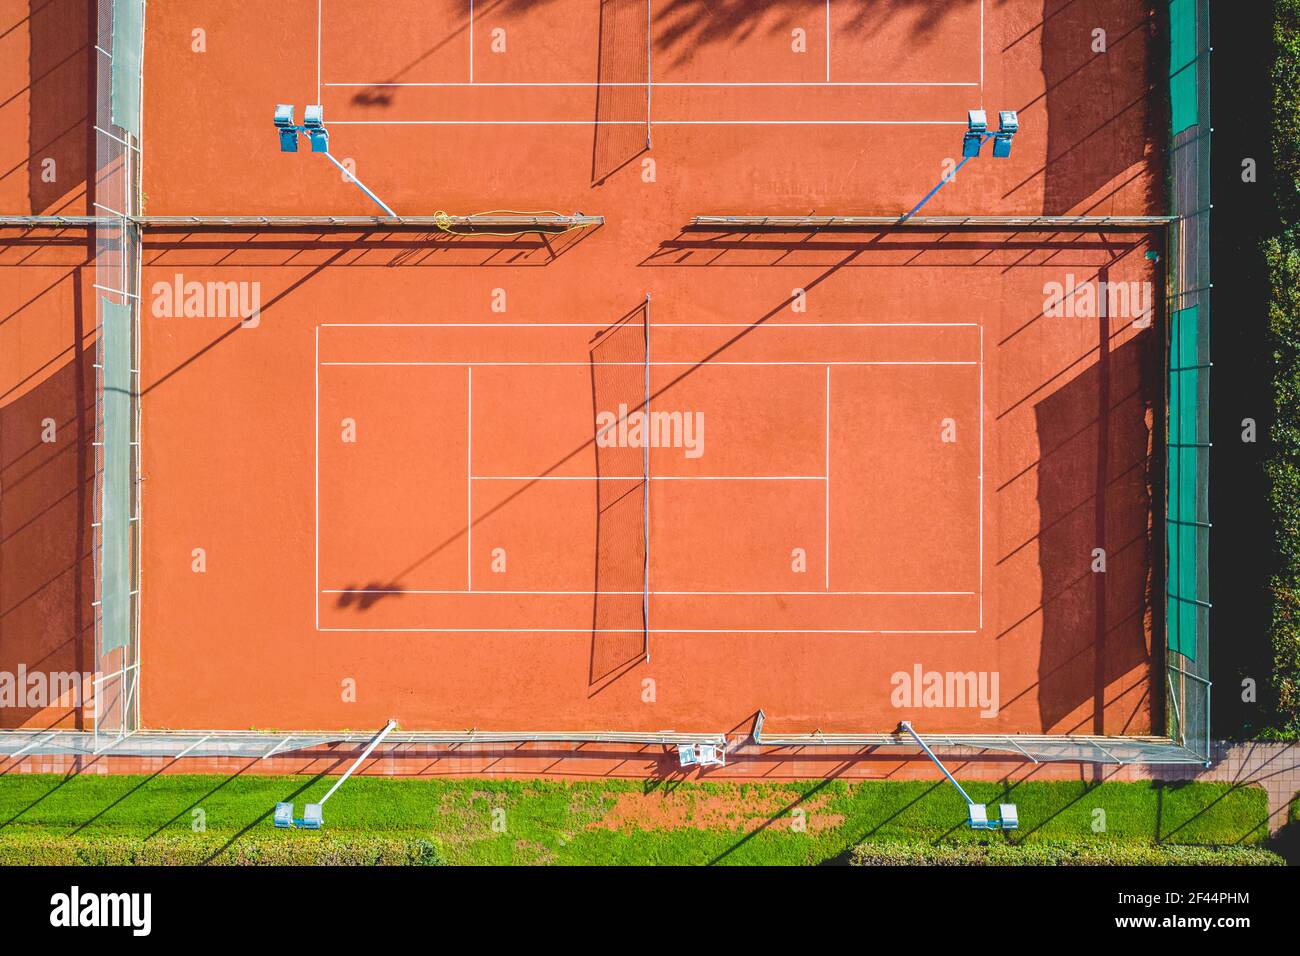 Vista aerea del campo da tennis in argilla rossa Foto Stock